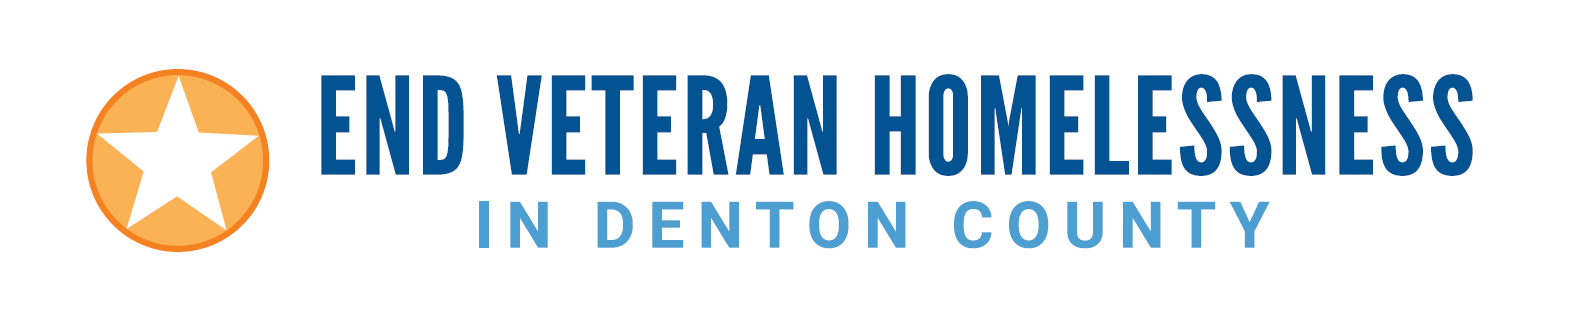 Ending Veteran Homelessness in Denton County